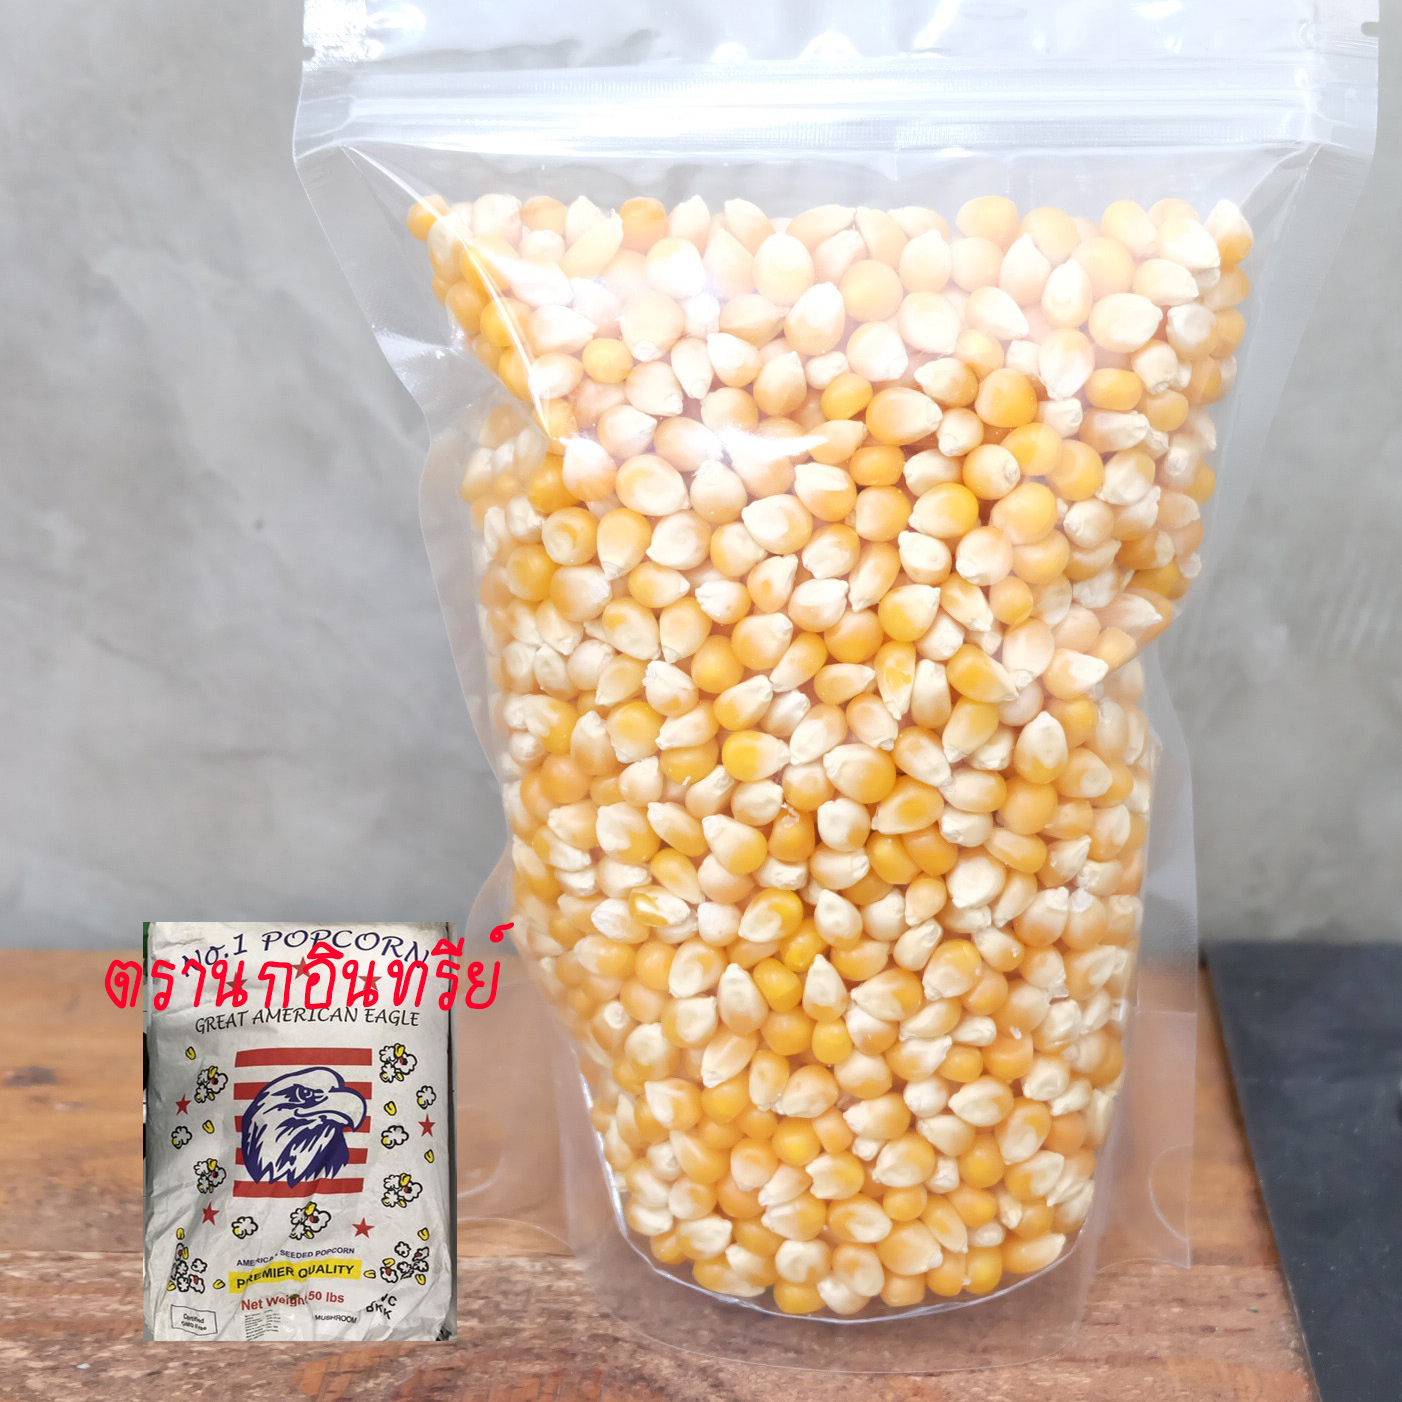 (ส่งไว พร้อมเก็บเงินปลายทาง) เมล็ดป็อปคอร์นMushroomดิบ ป๊อปคอร์นทรงกลม ทรงหัวเห็ด เกรดPremium อันดับ 1 เม็ดกลมใหญ่ นำเข้าจากอเมริกา Mushroom Popcorn  เมล็ดข้าวโพดคั่ว น้ำหนัก 8,000 กรัม (8กิโลกรัม)